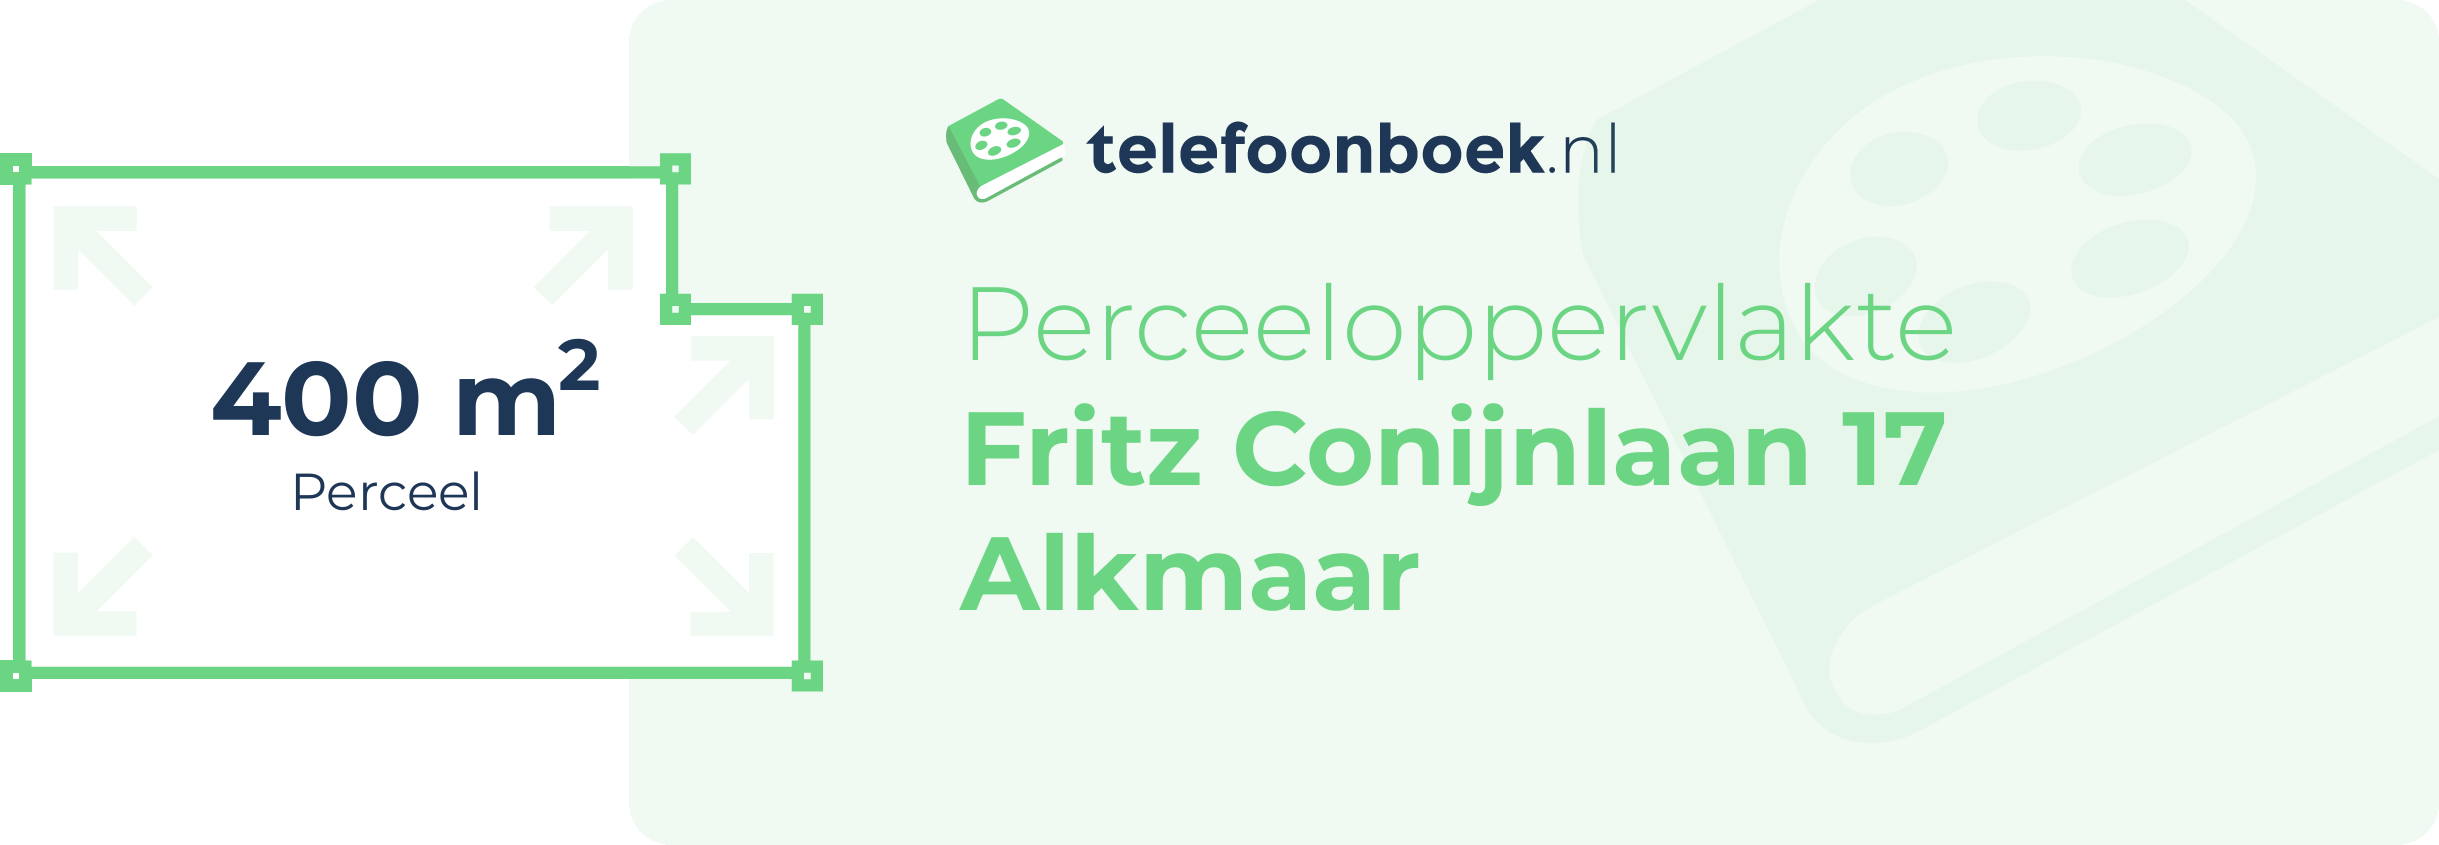 Perceeloppervlakte Fritz Conijnlaan 17 Alkmaar